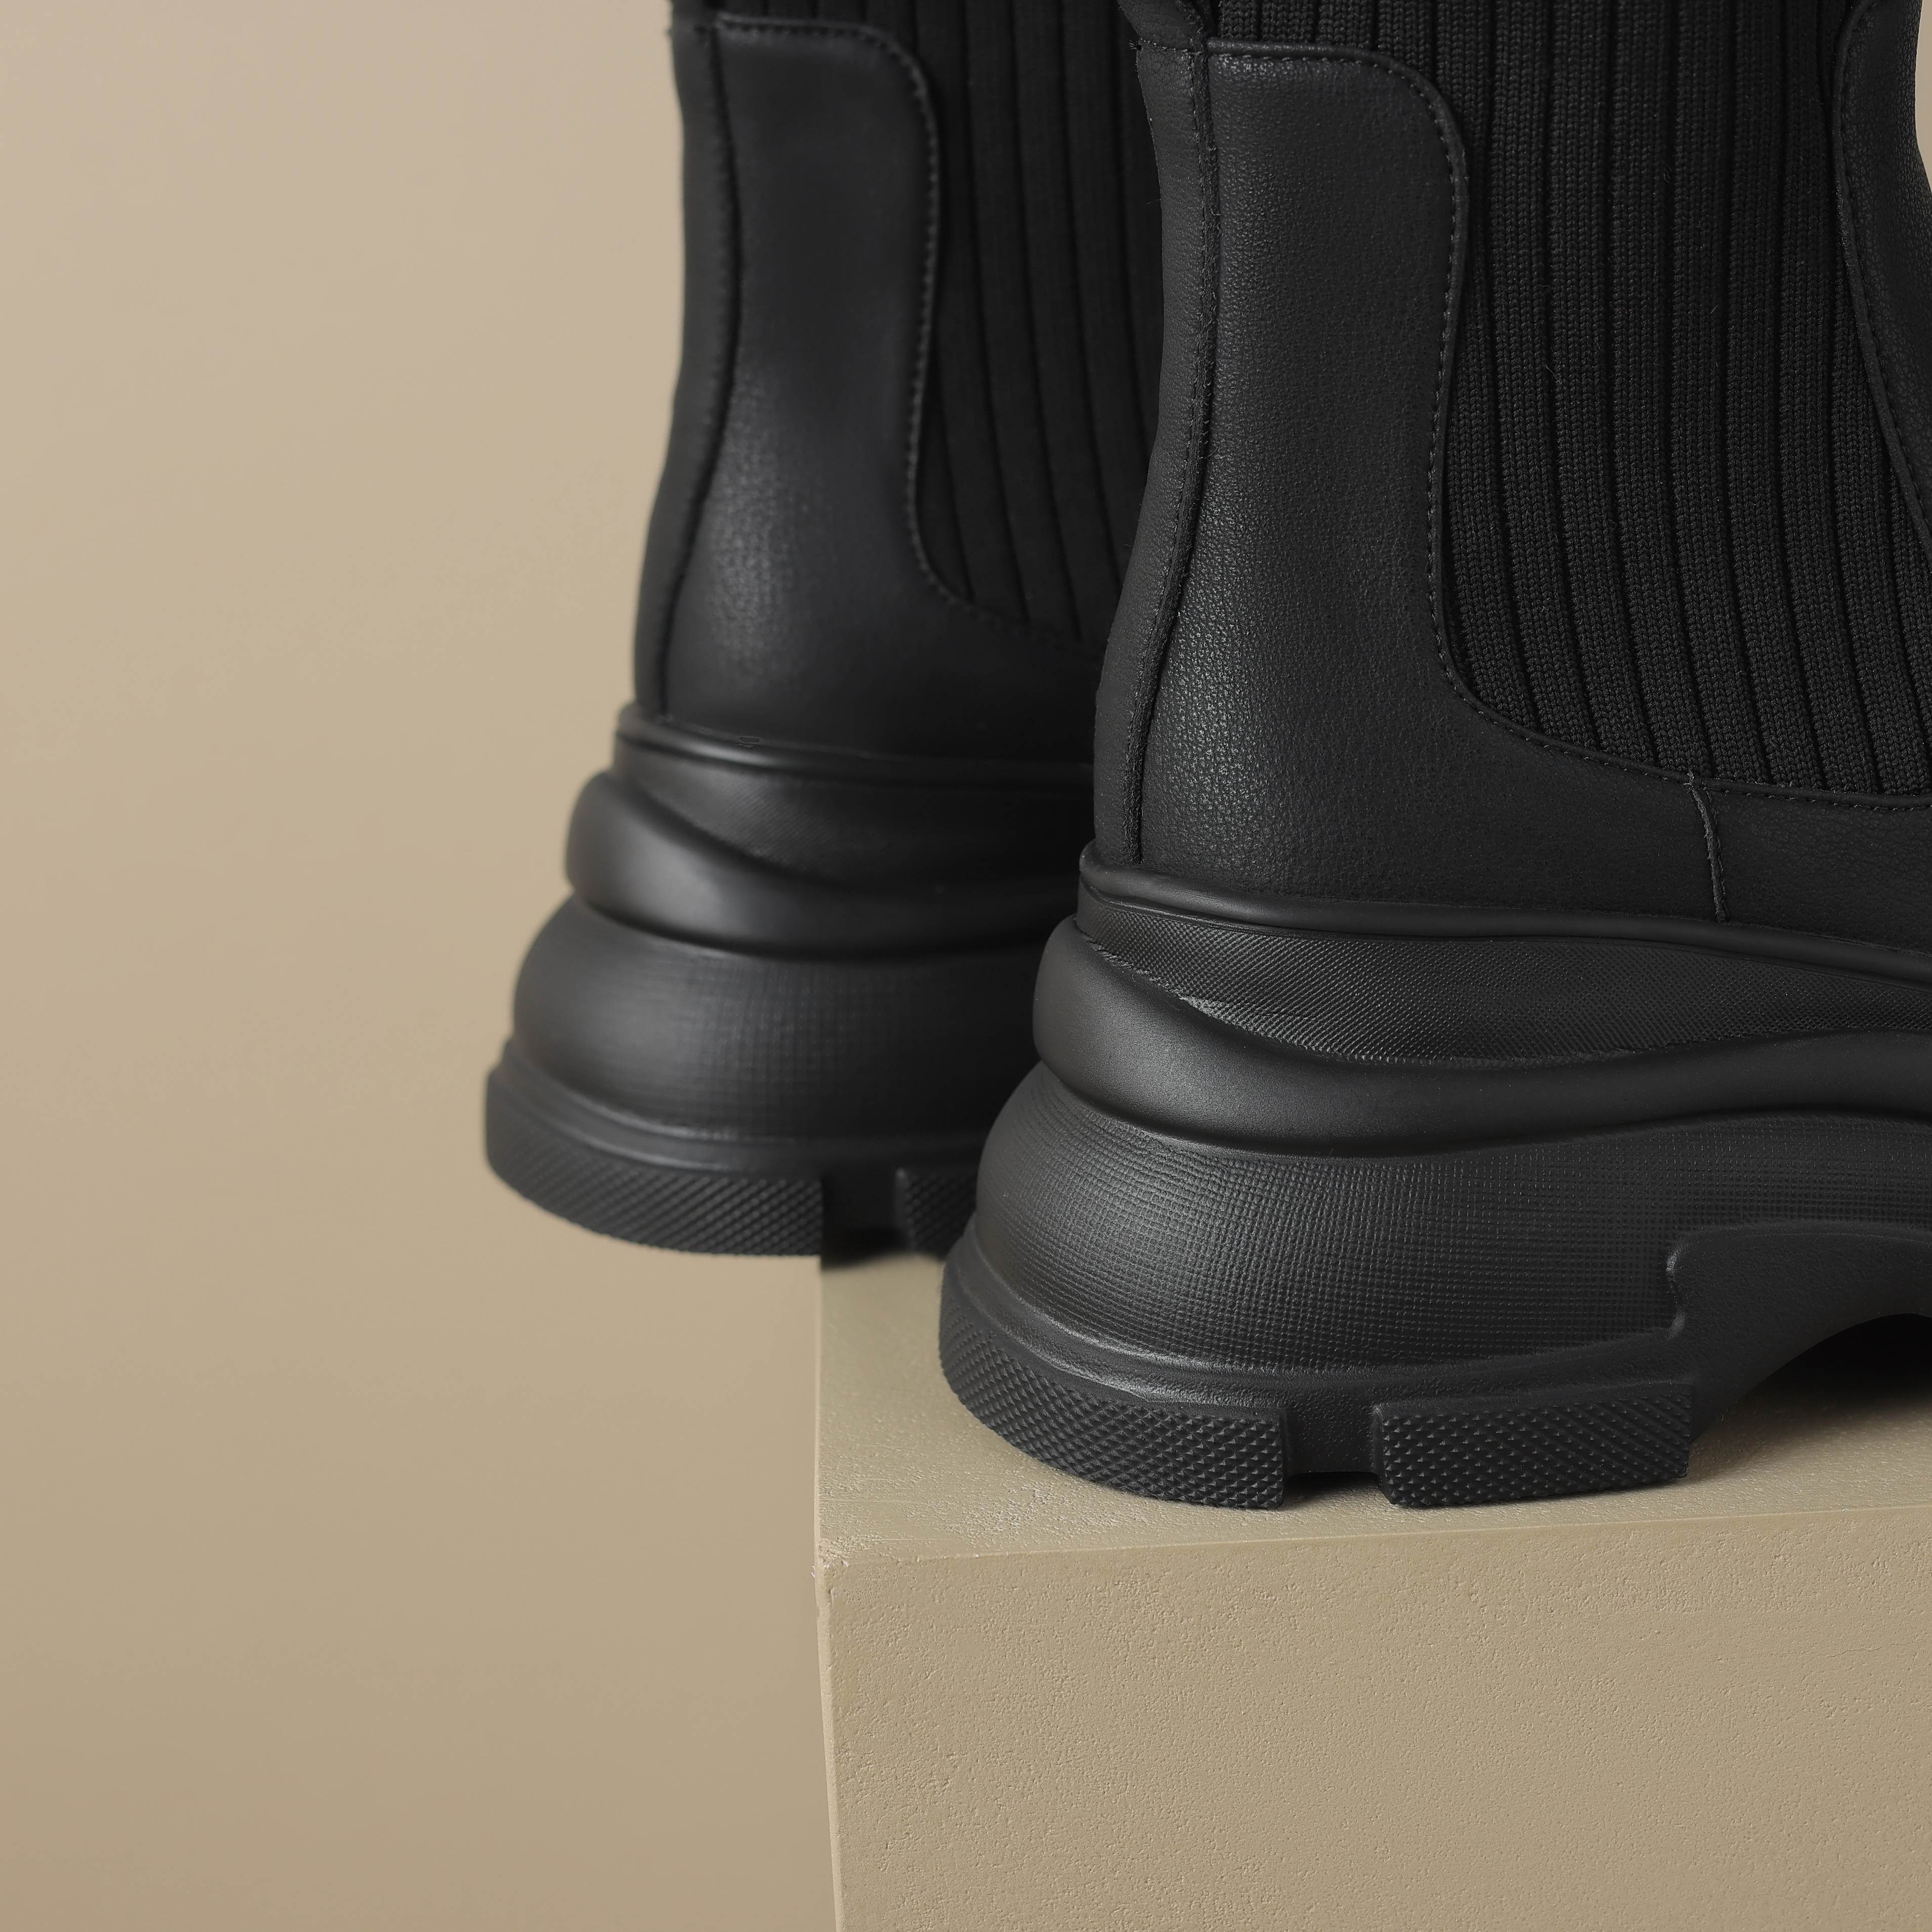 Autumn Boots Color Black Size 5 for Women